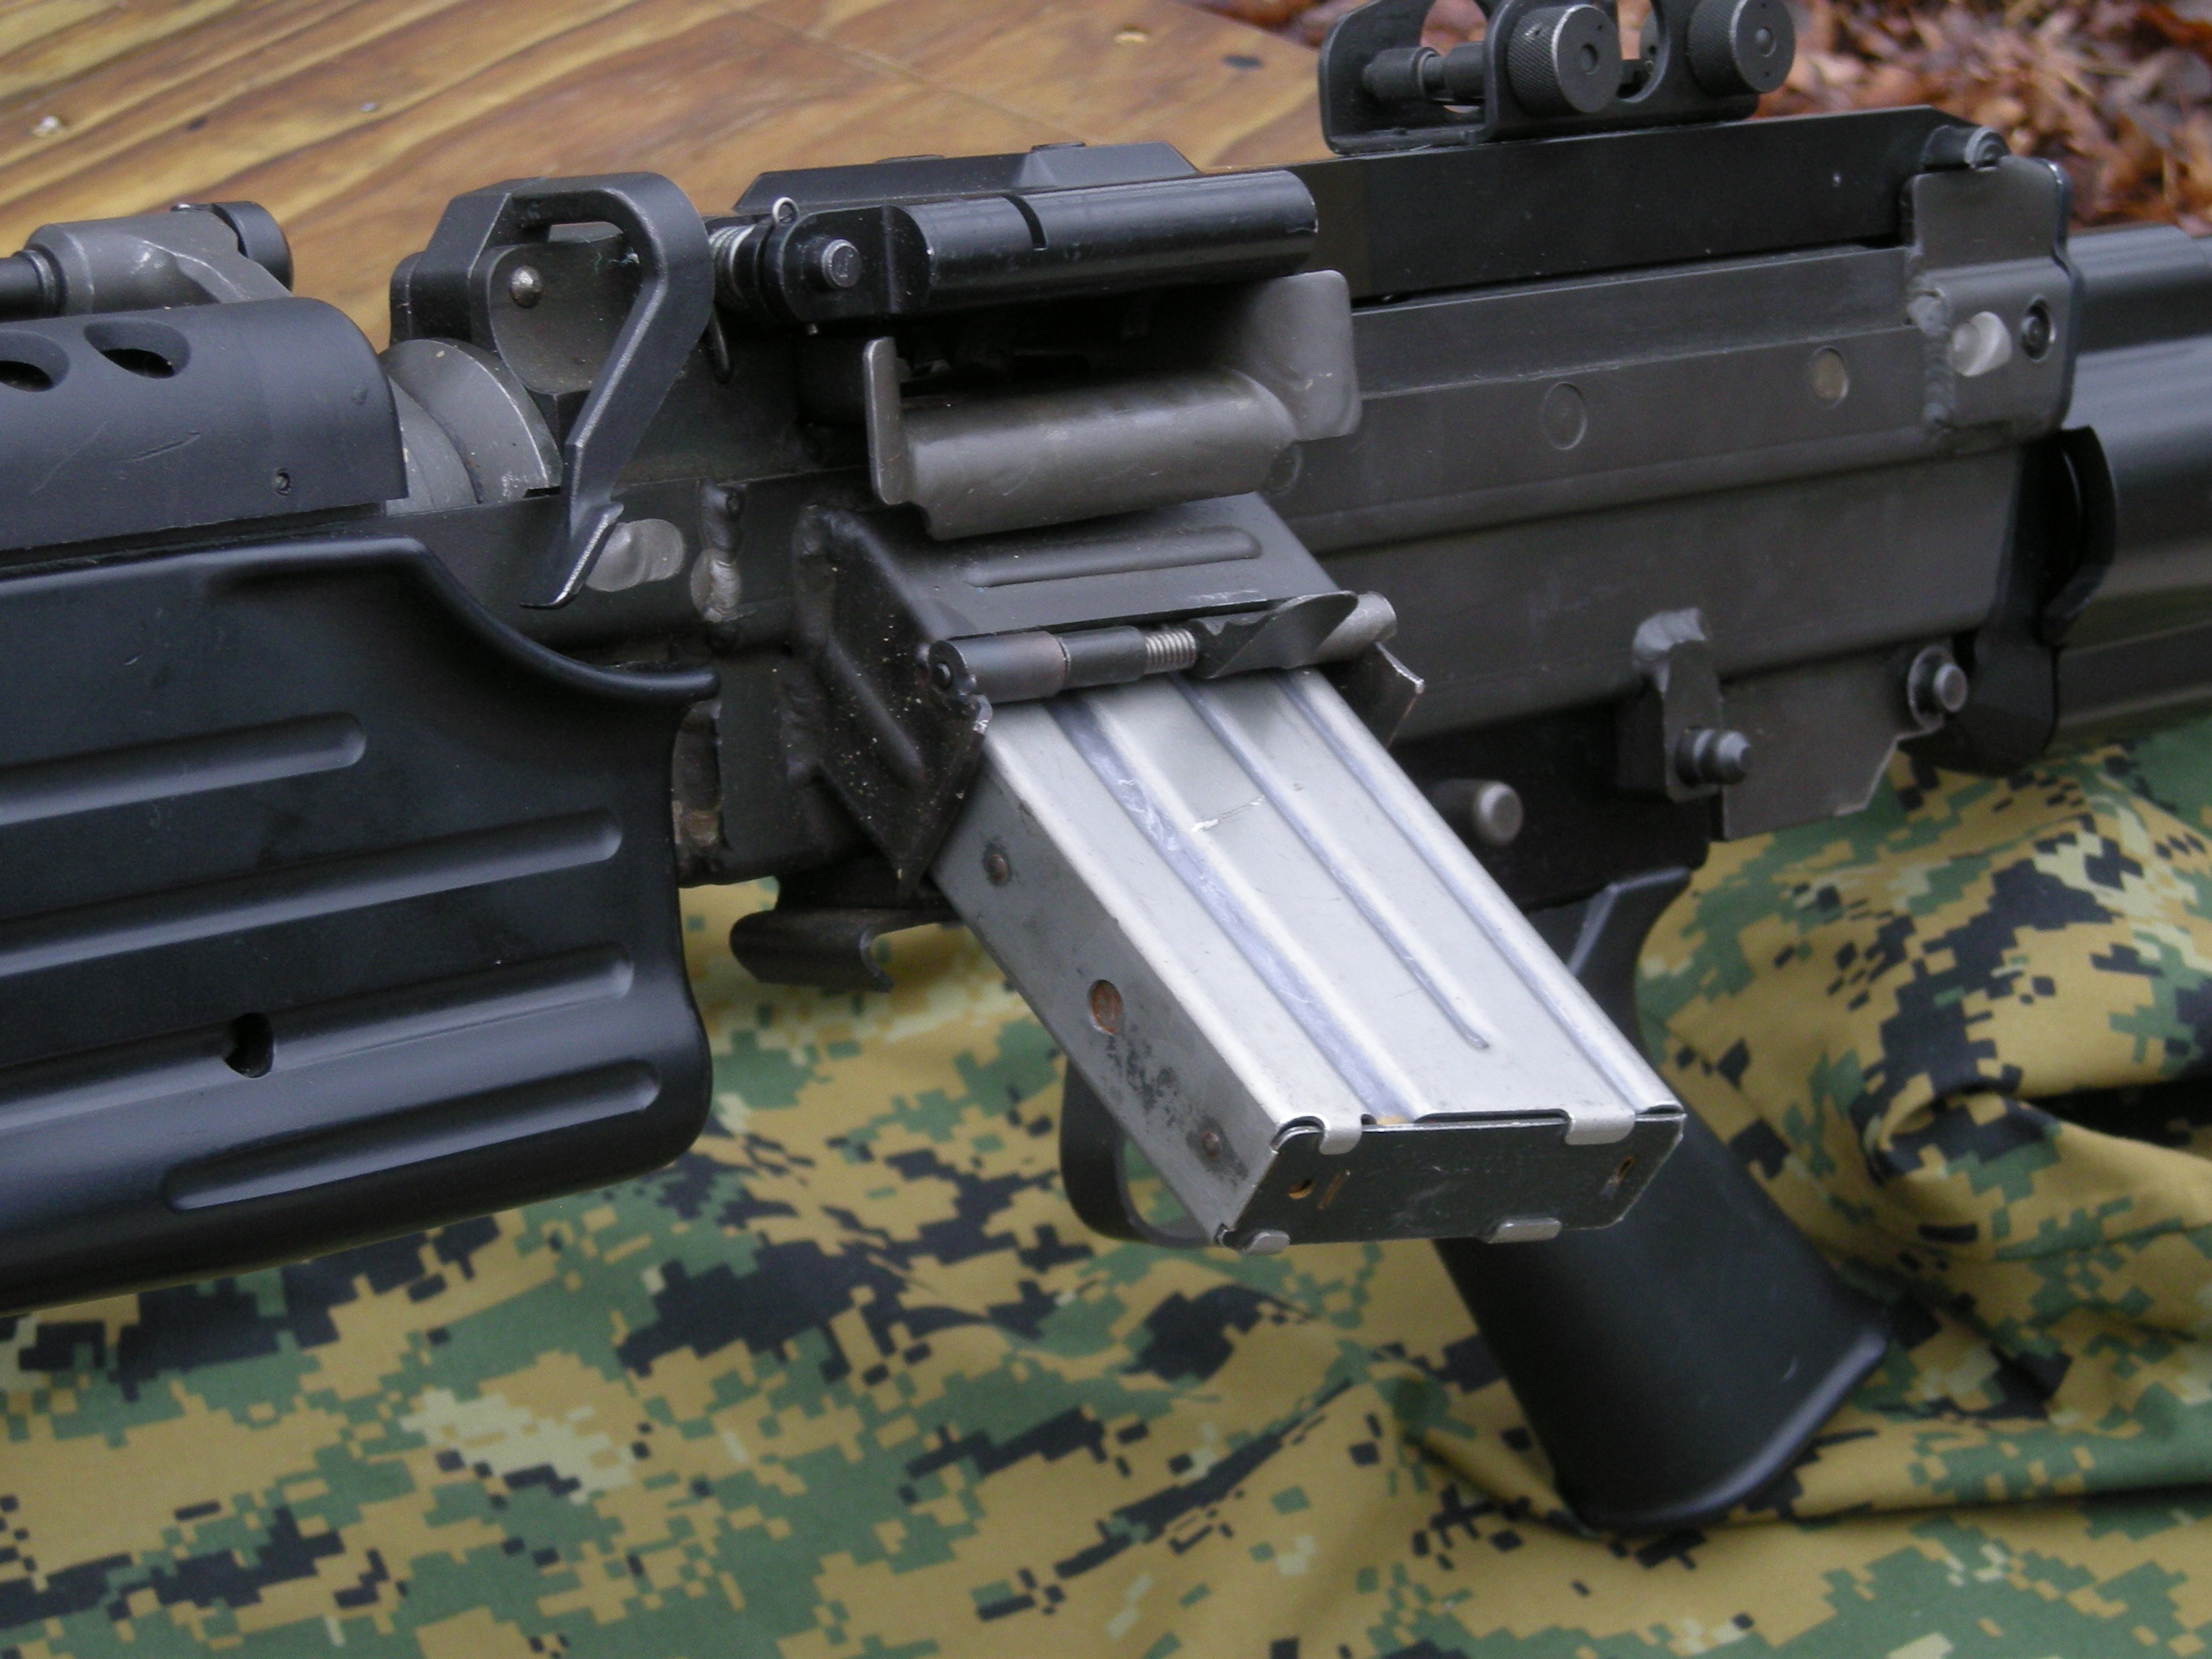 PKM16轻机枪图片图片